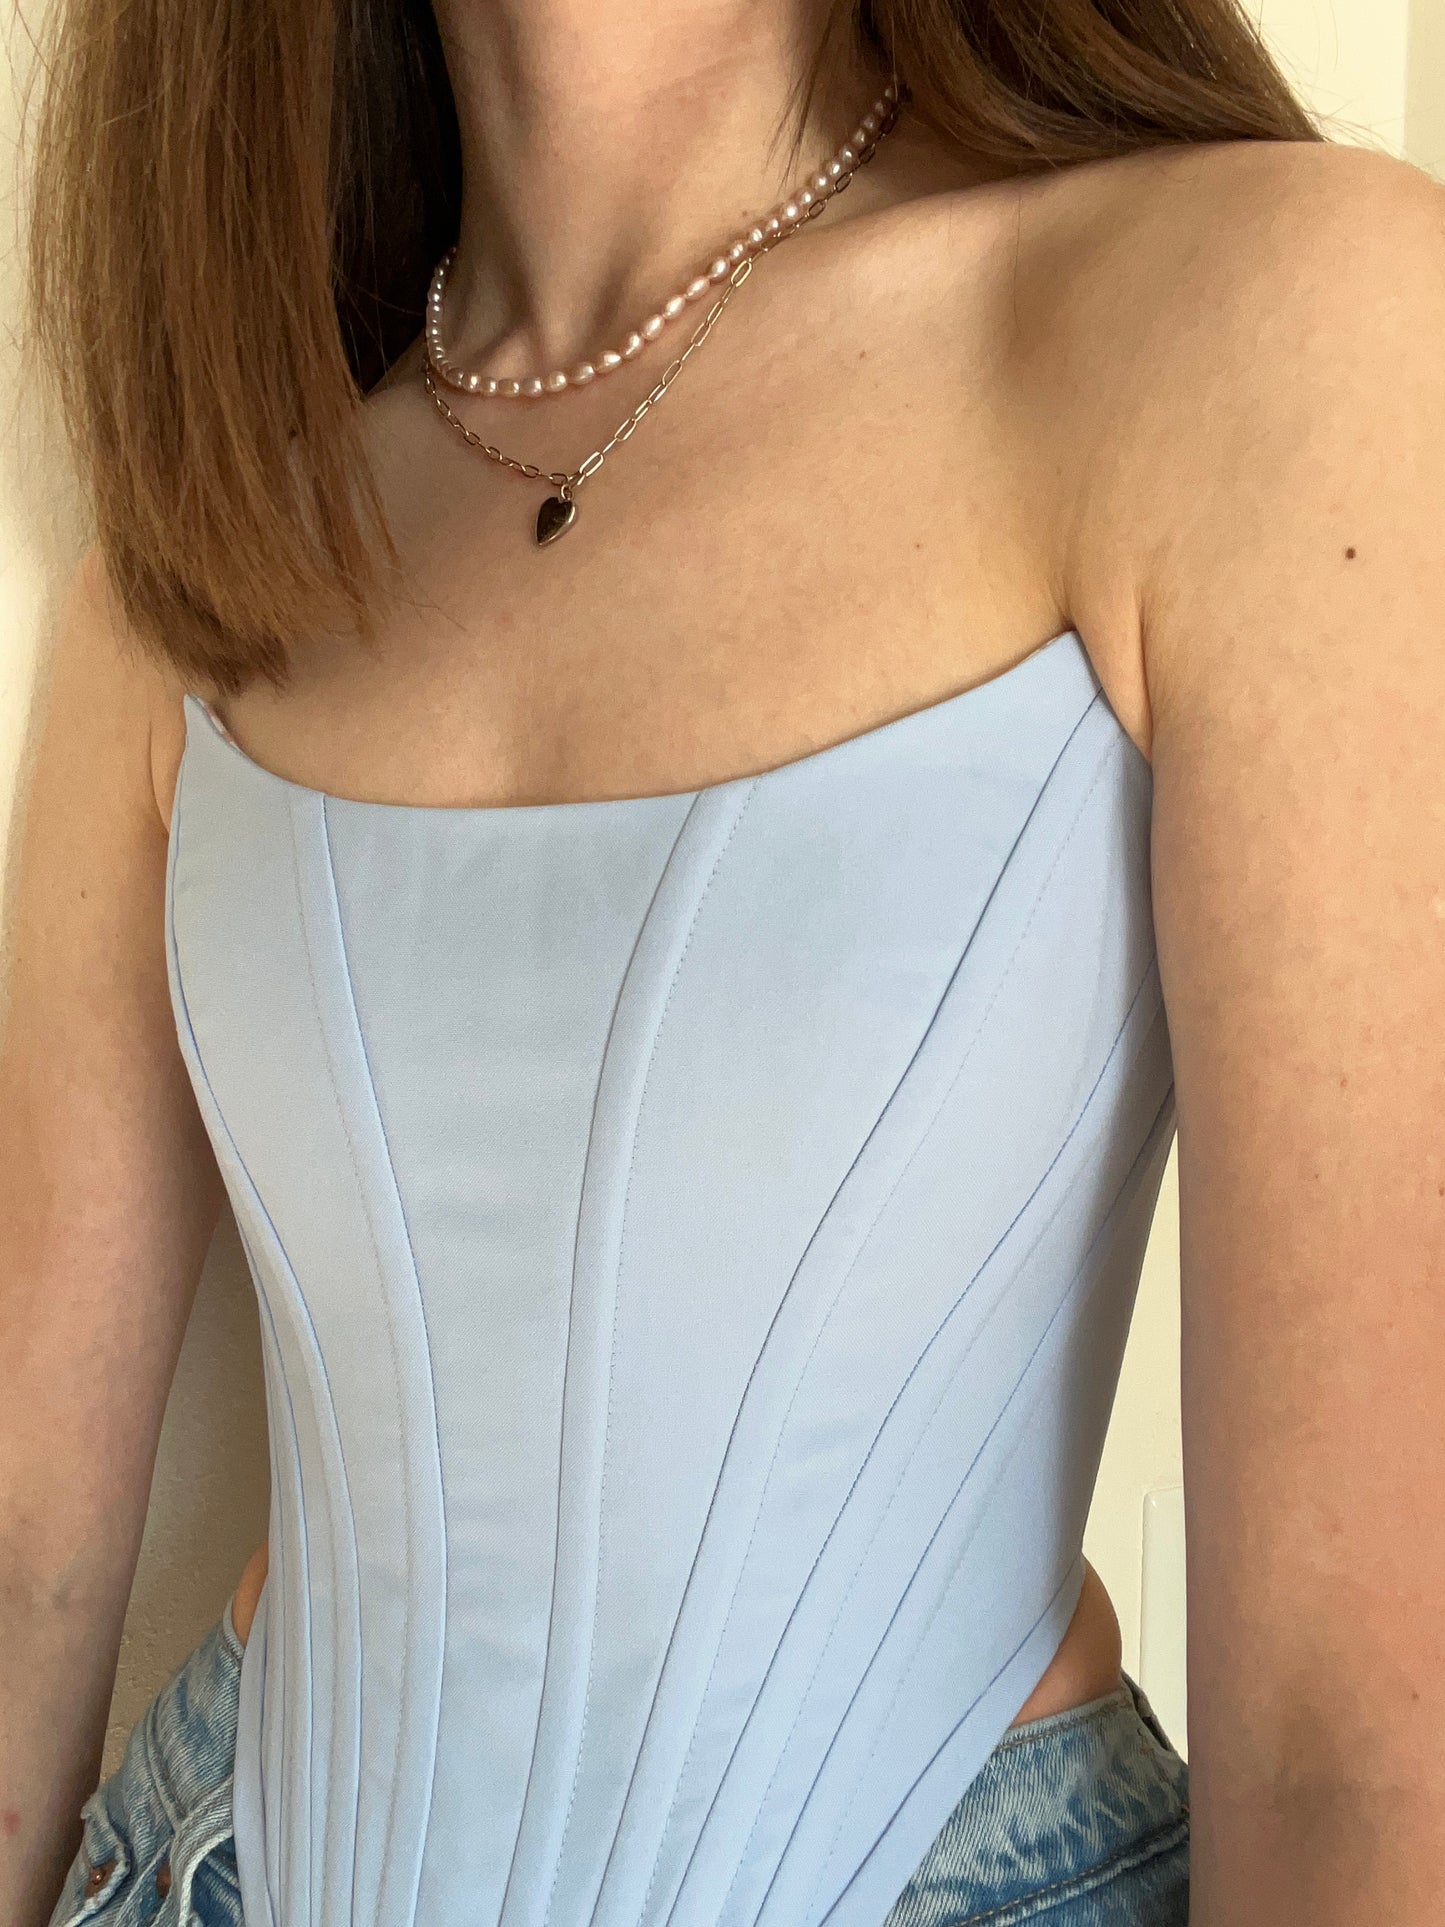 Sky blue corset, size M